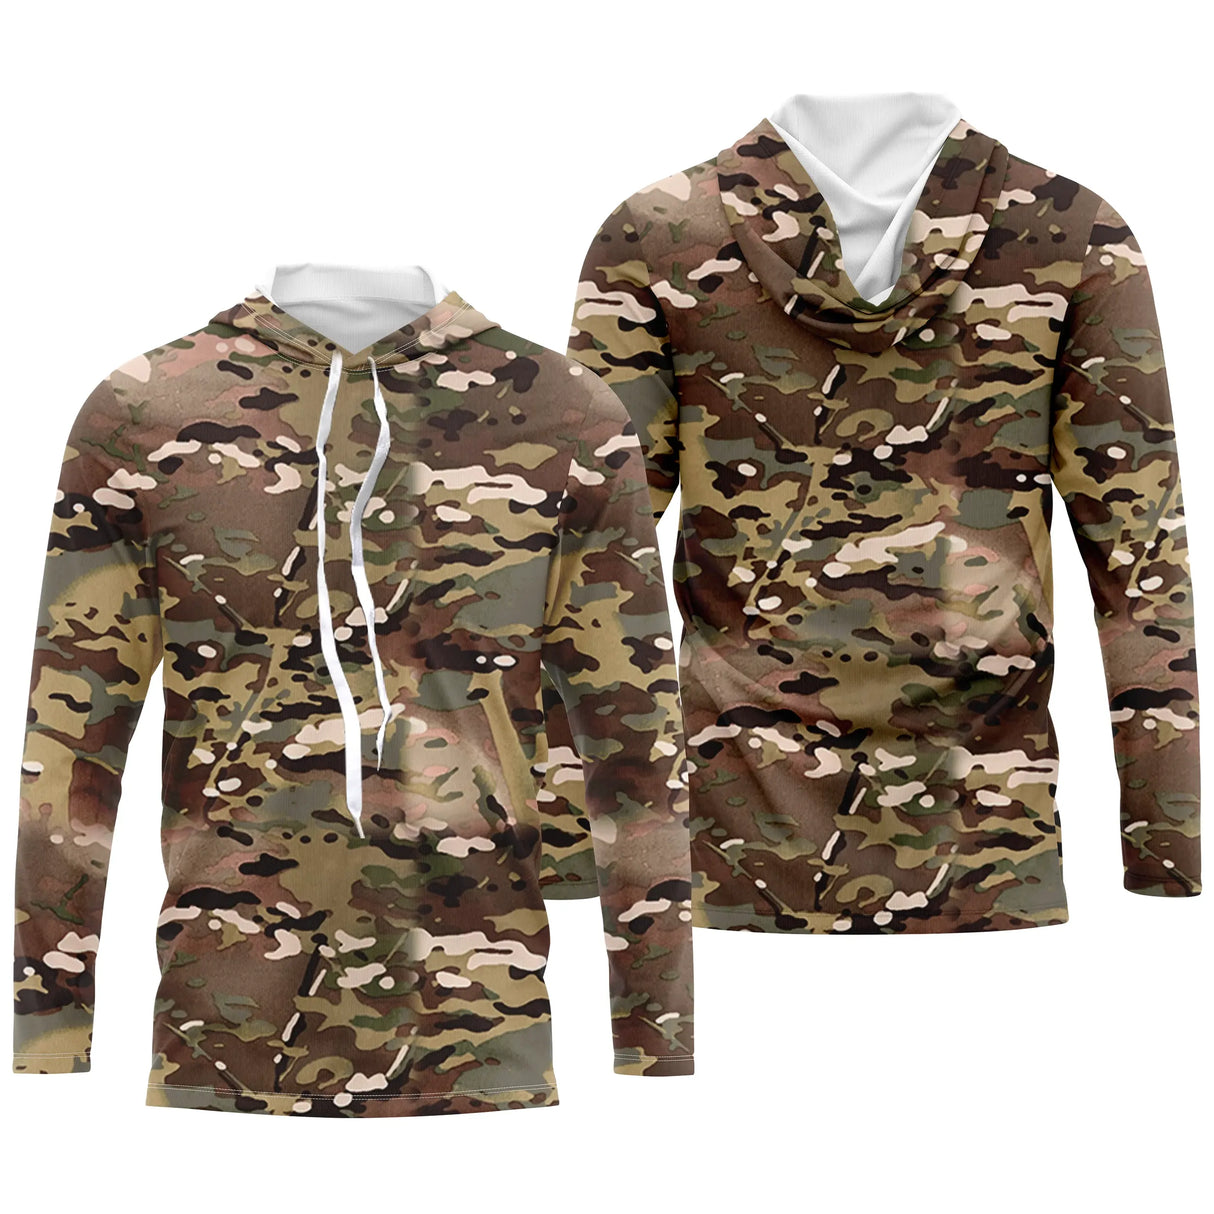 Ropa de pesca y caza de camuflaje, regalo para pescador, cazador, camiseta de camuflaje, sudadera con capucha anti-UV - CT06072231